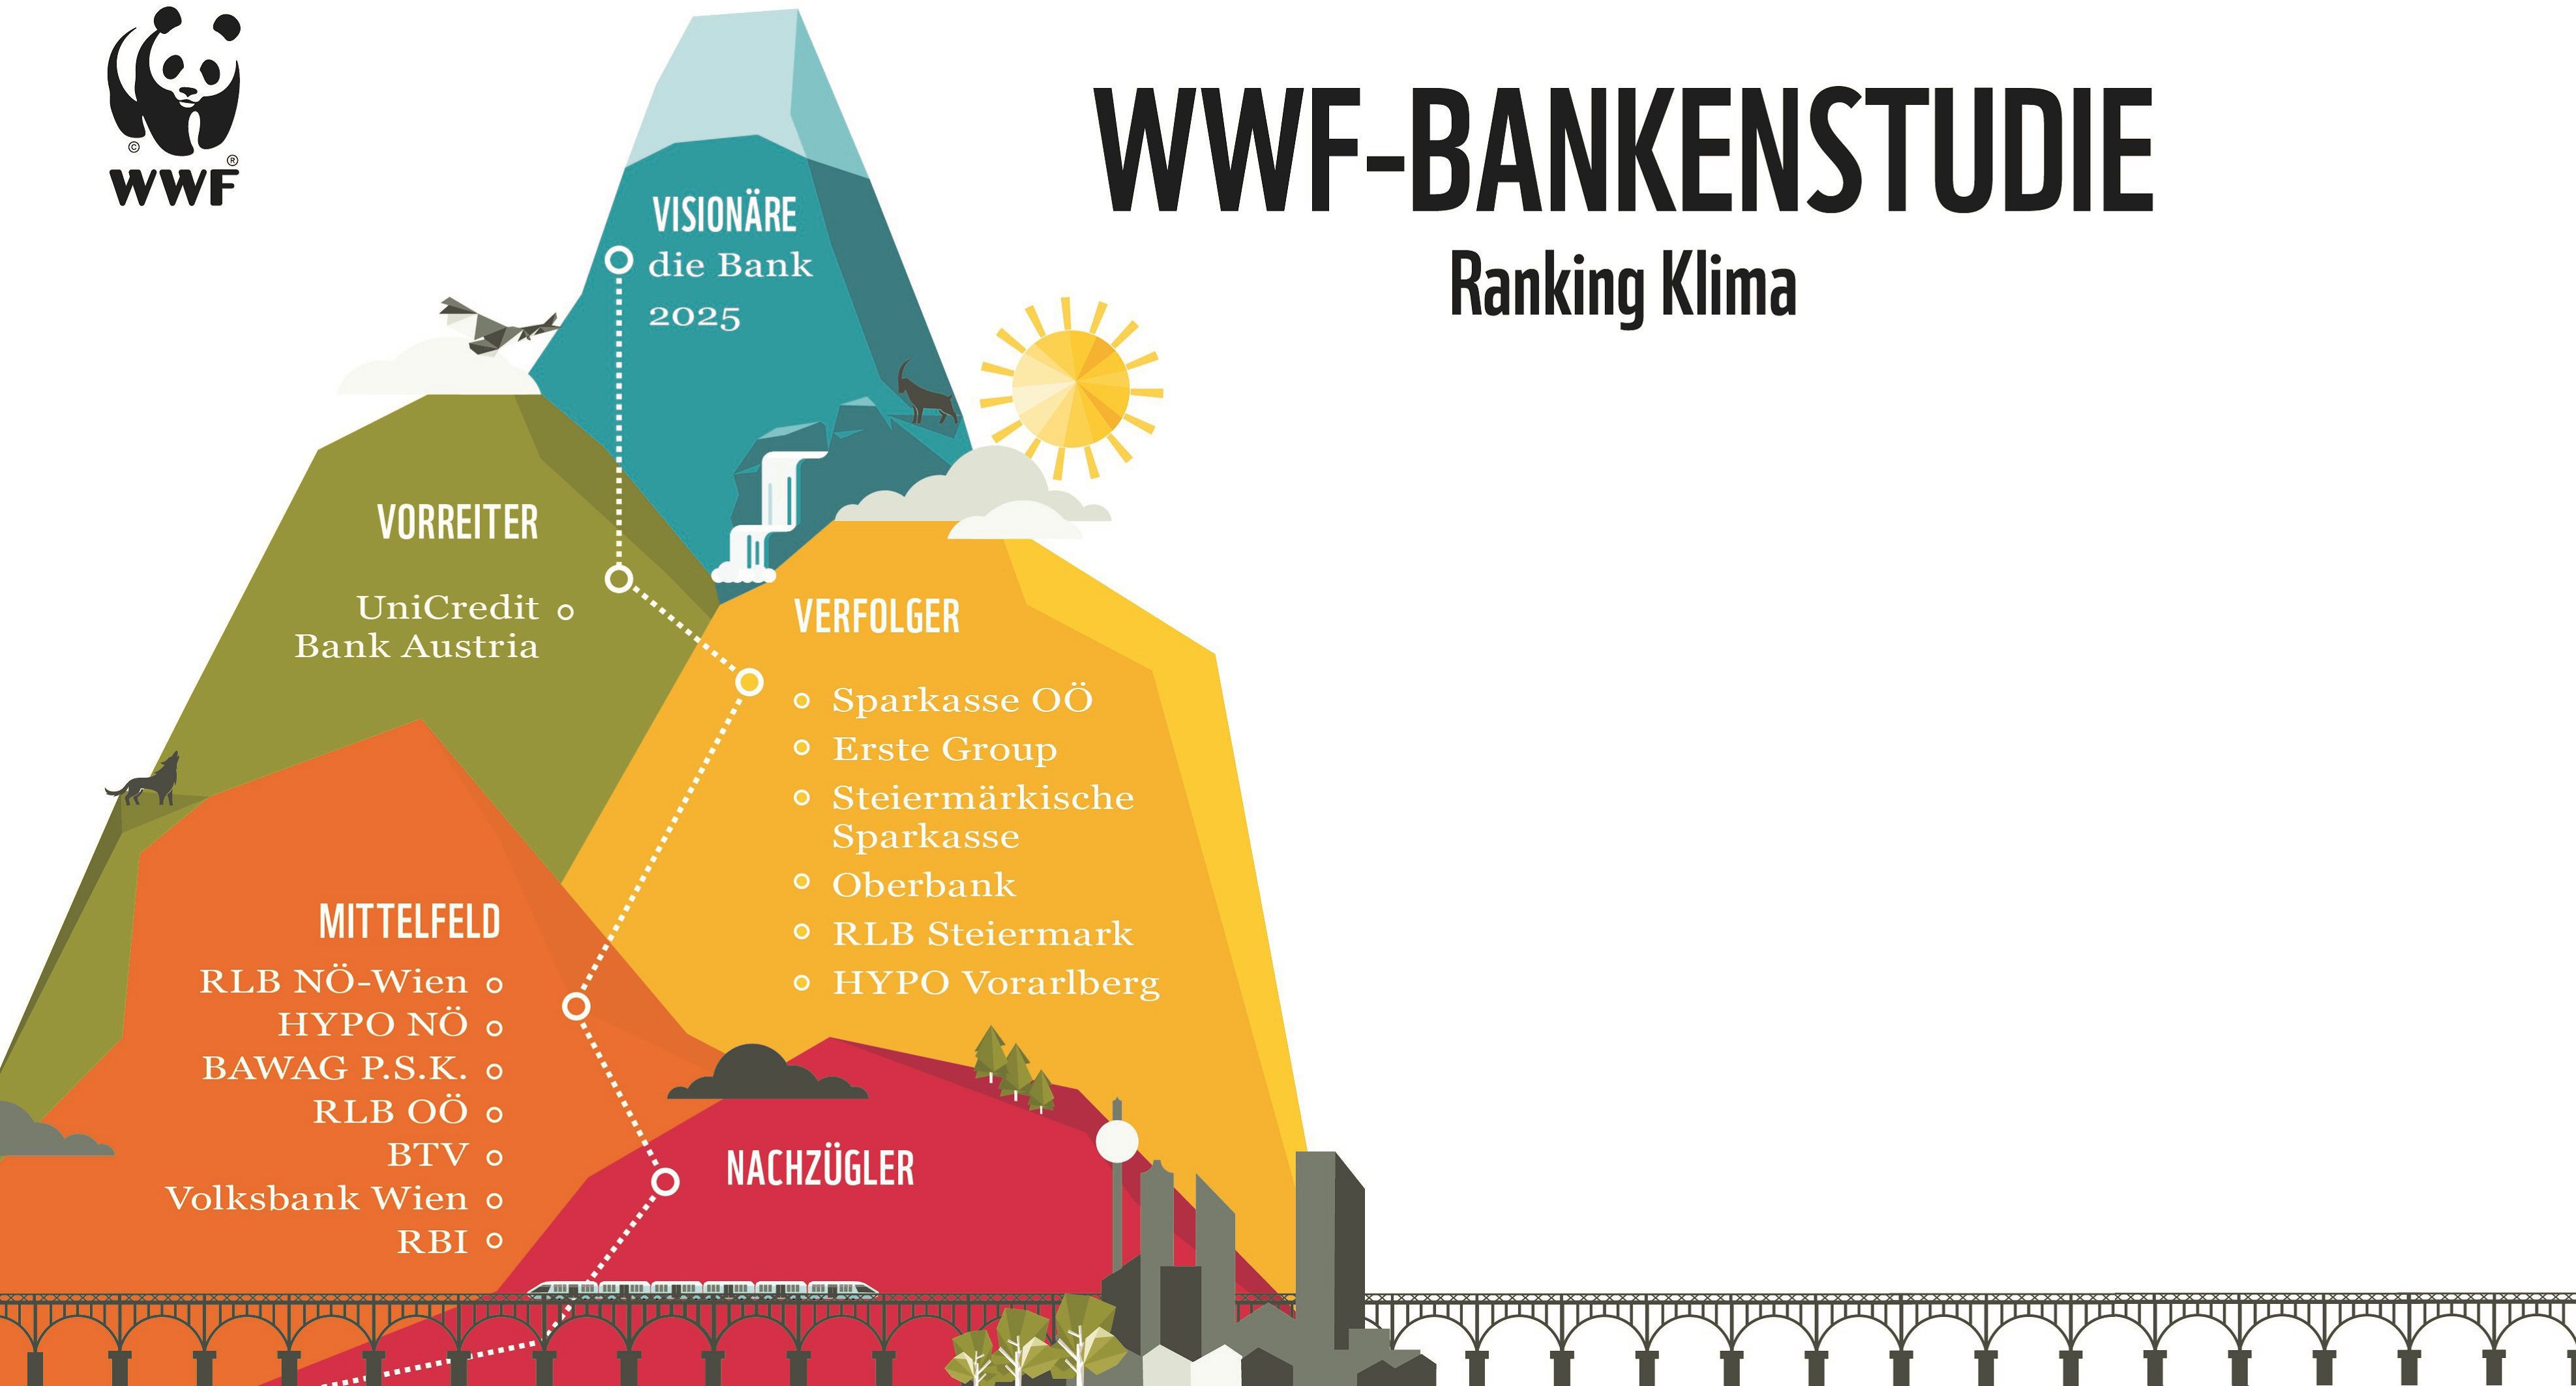 Eine bunte Grafik zeigt, welche heimischen Banken Visionäre, Vorreiter, Verfolger, Mittelfeld bzw. Nachzügler zum Thema Klima sind. 